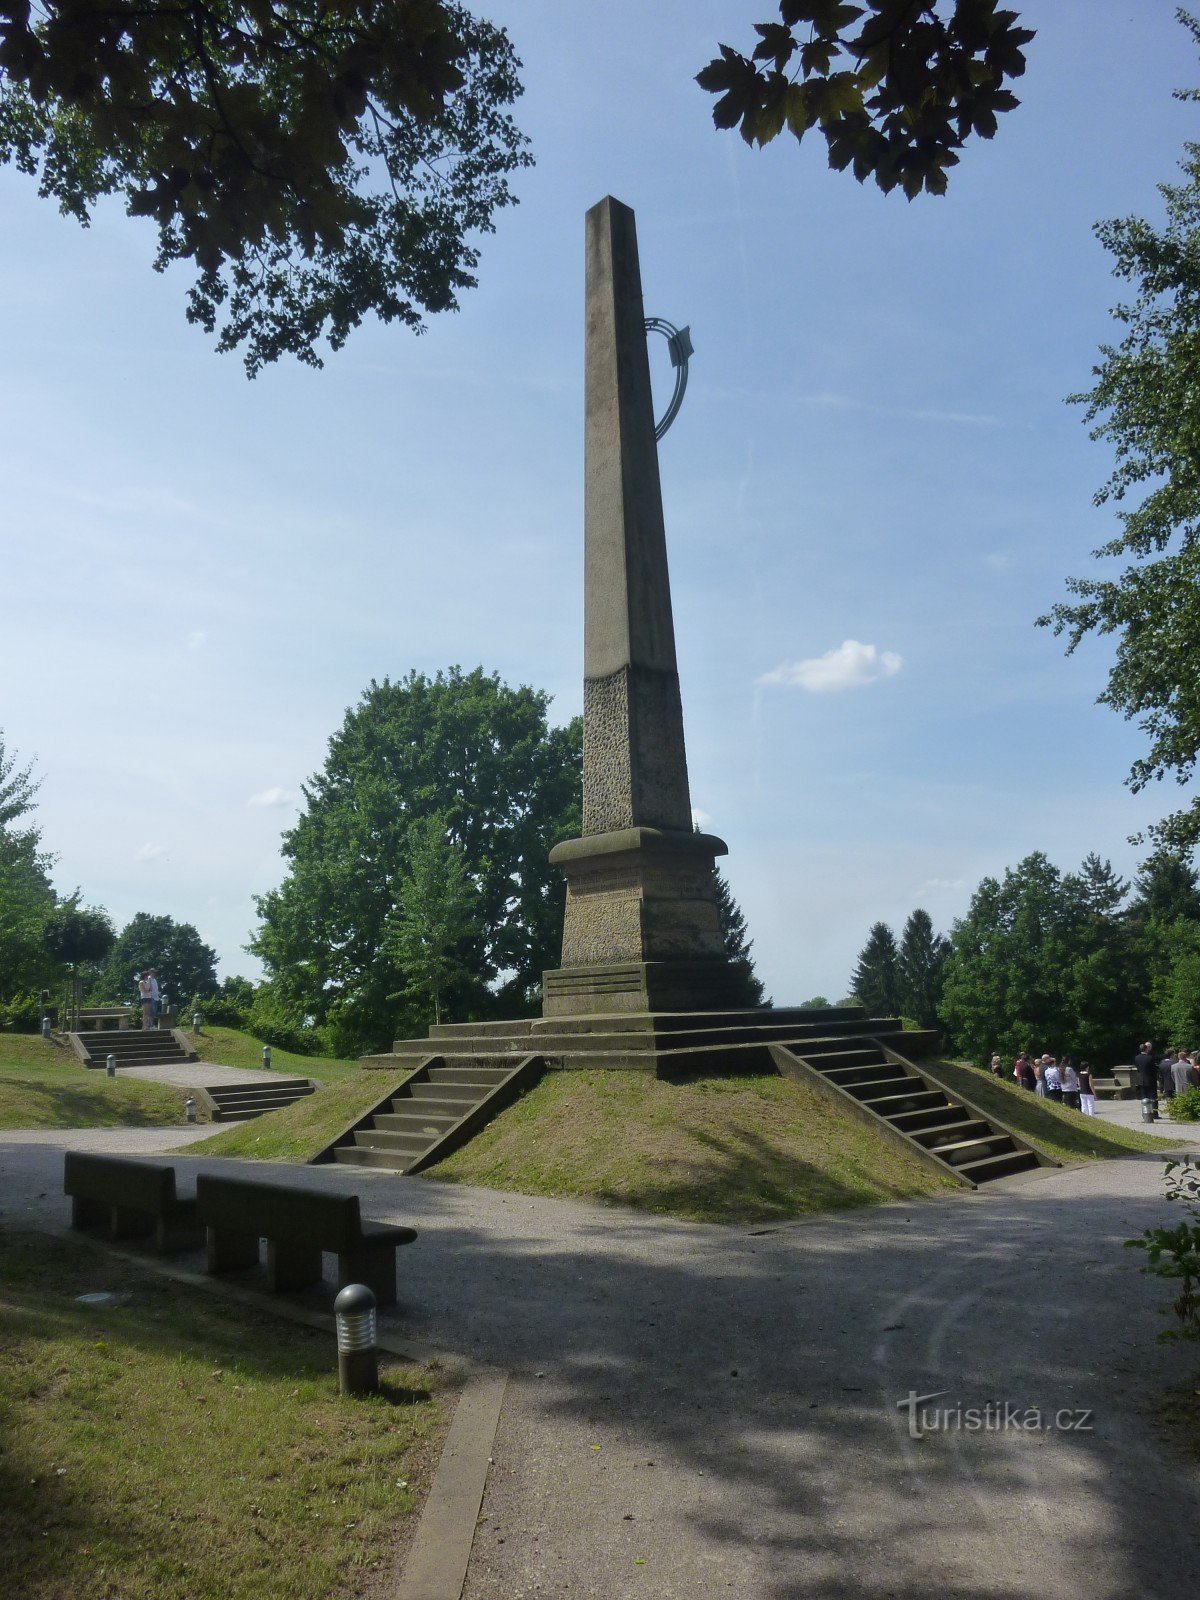 spomenik in park kipov sv. Gothard